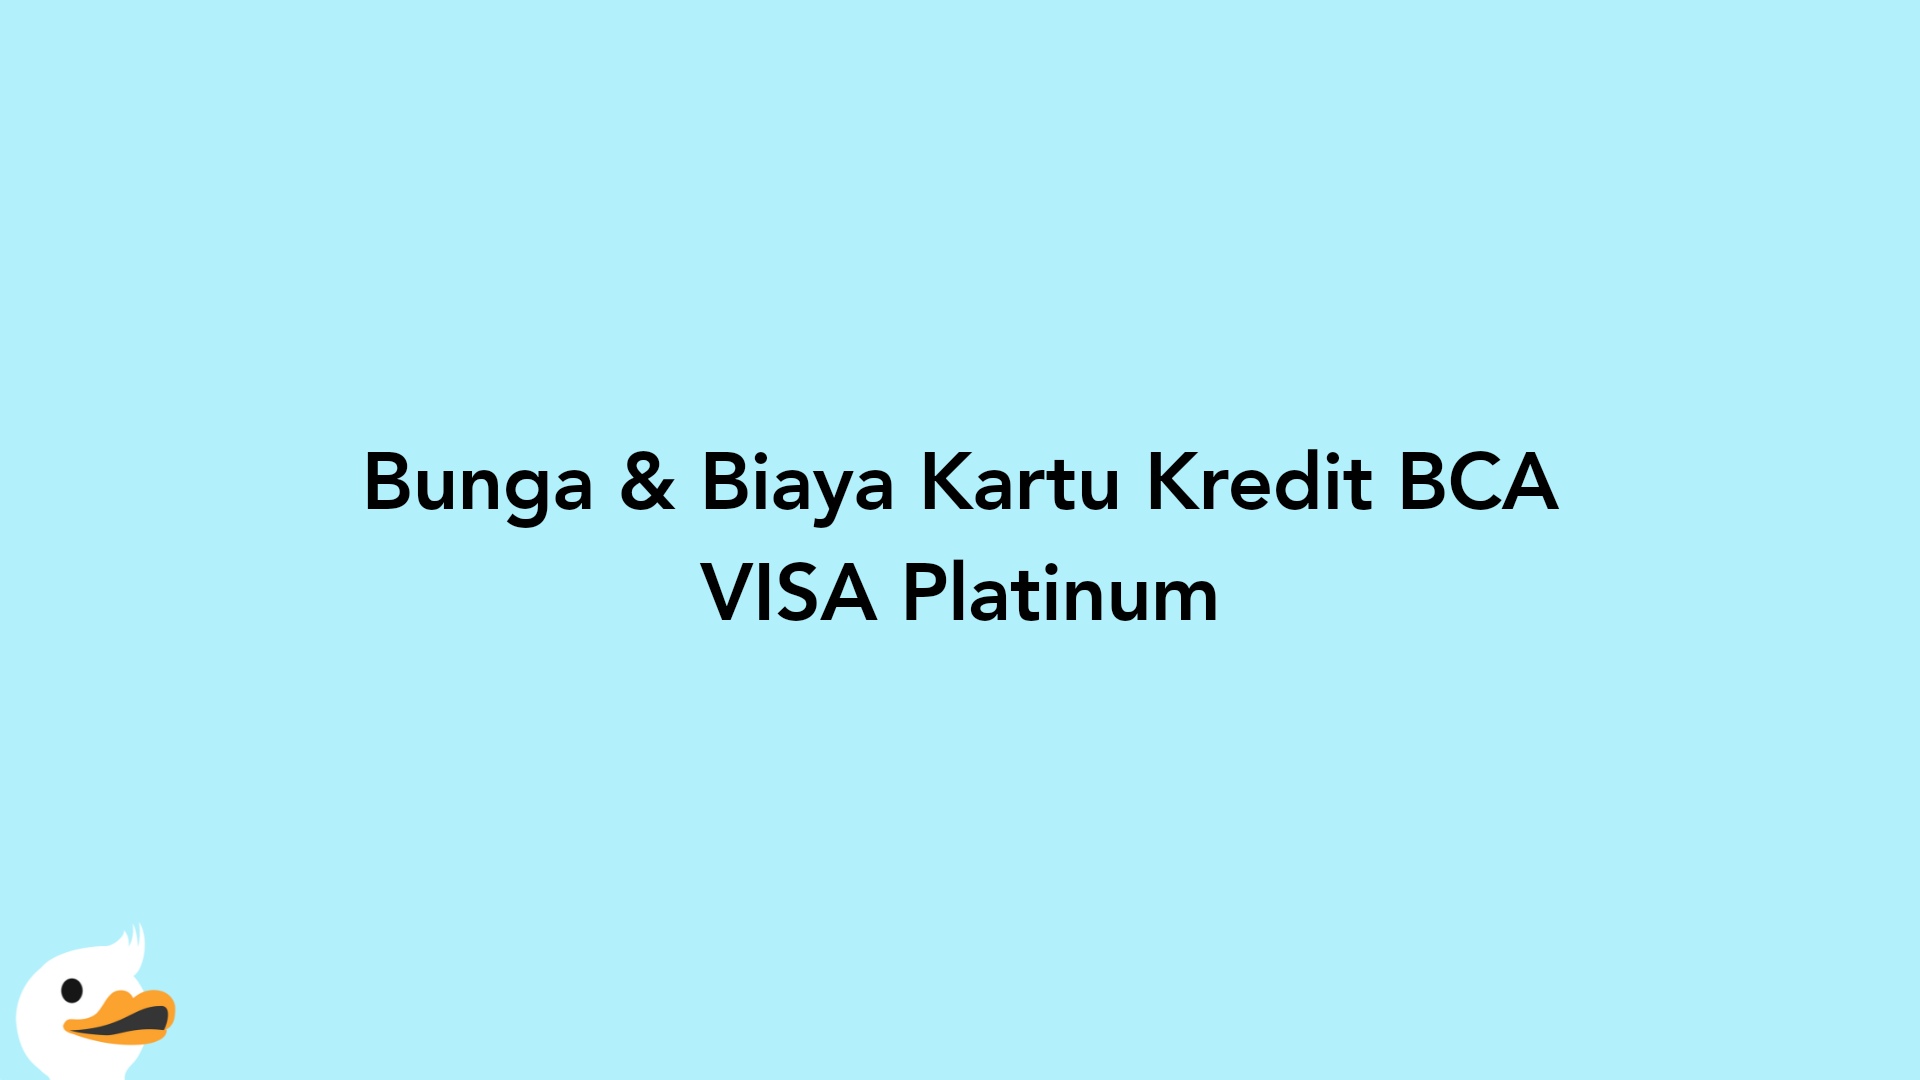 Bunga & Biaya Kartu Kredit BCA VISA Platinum